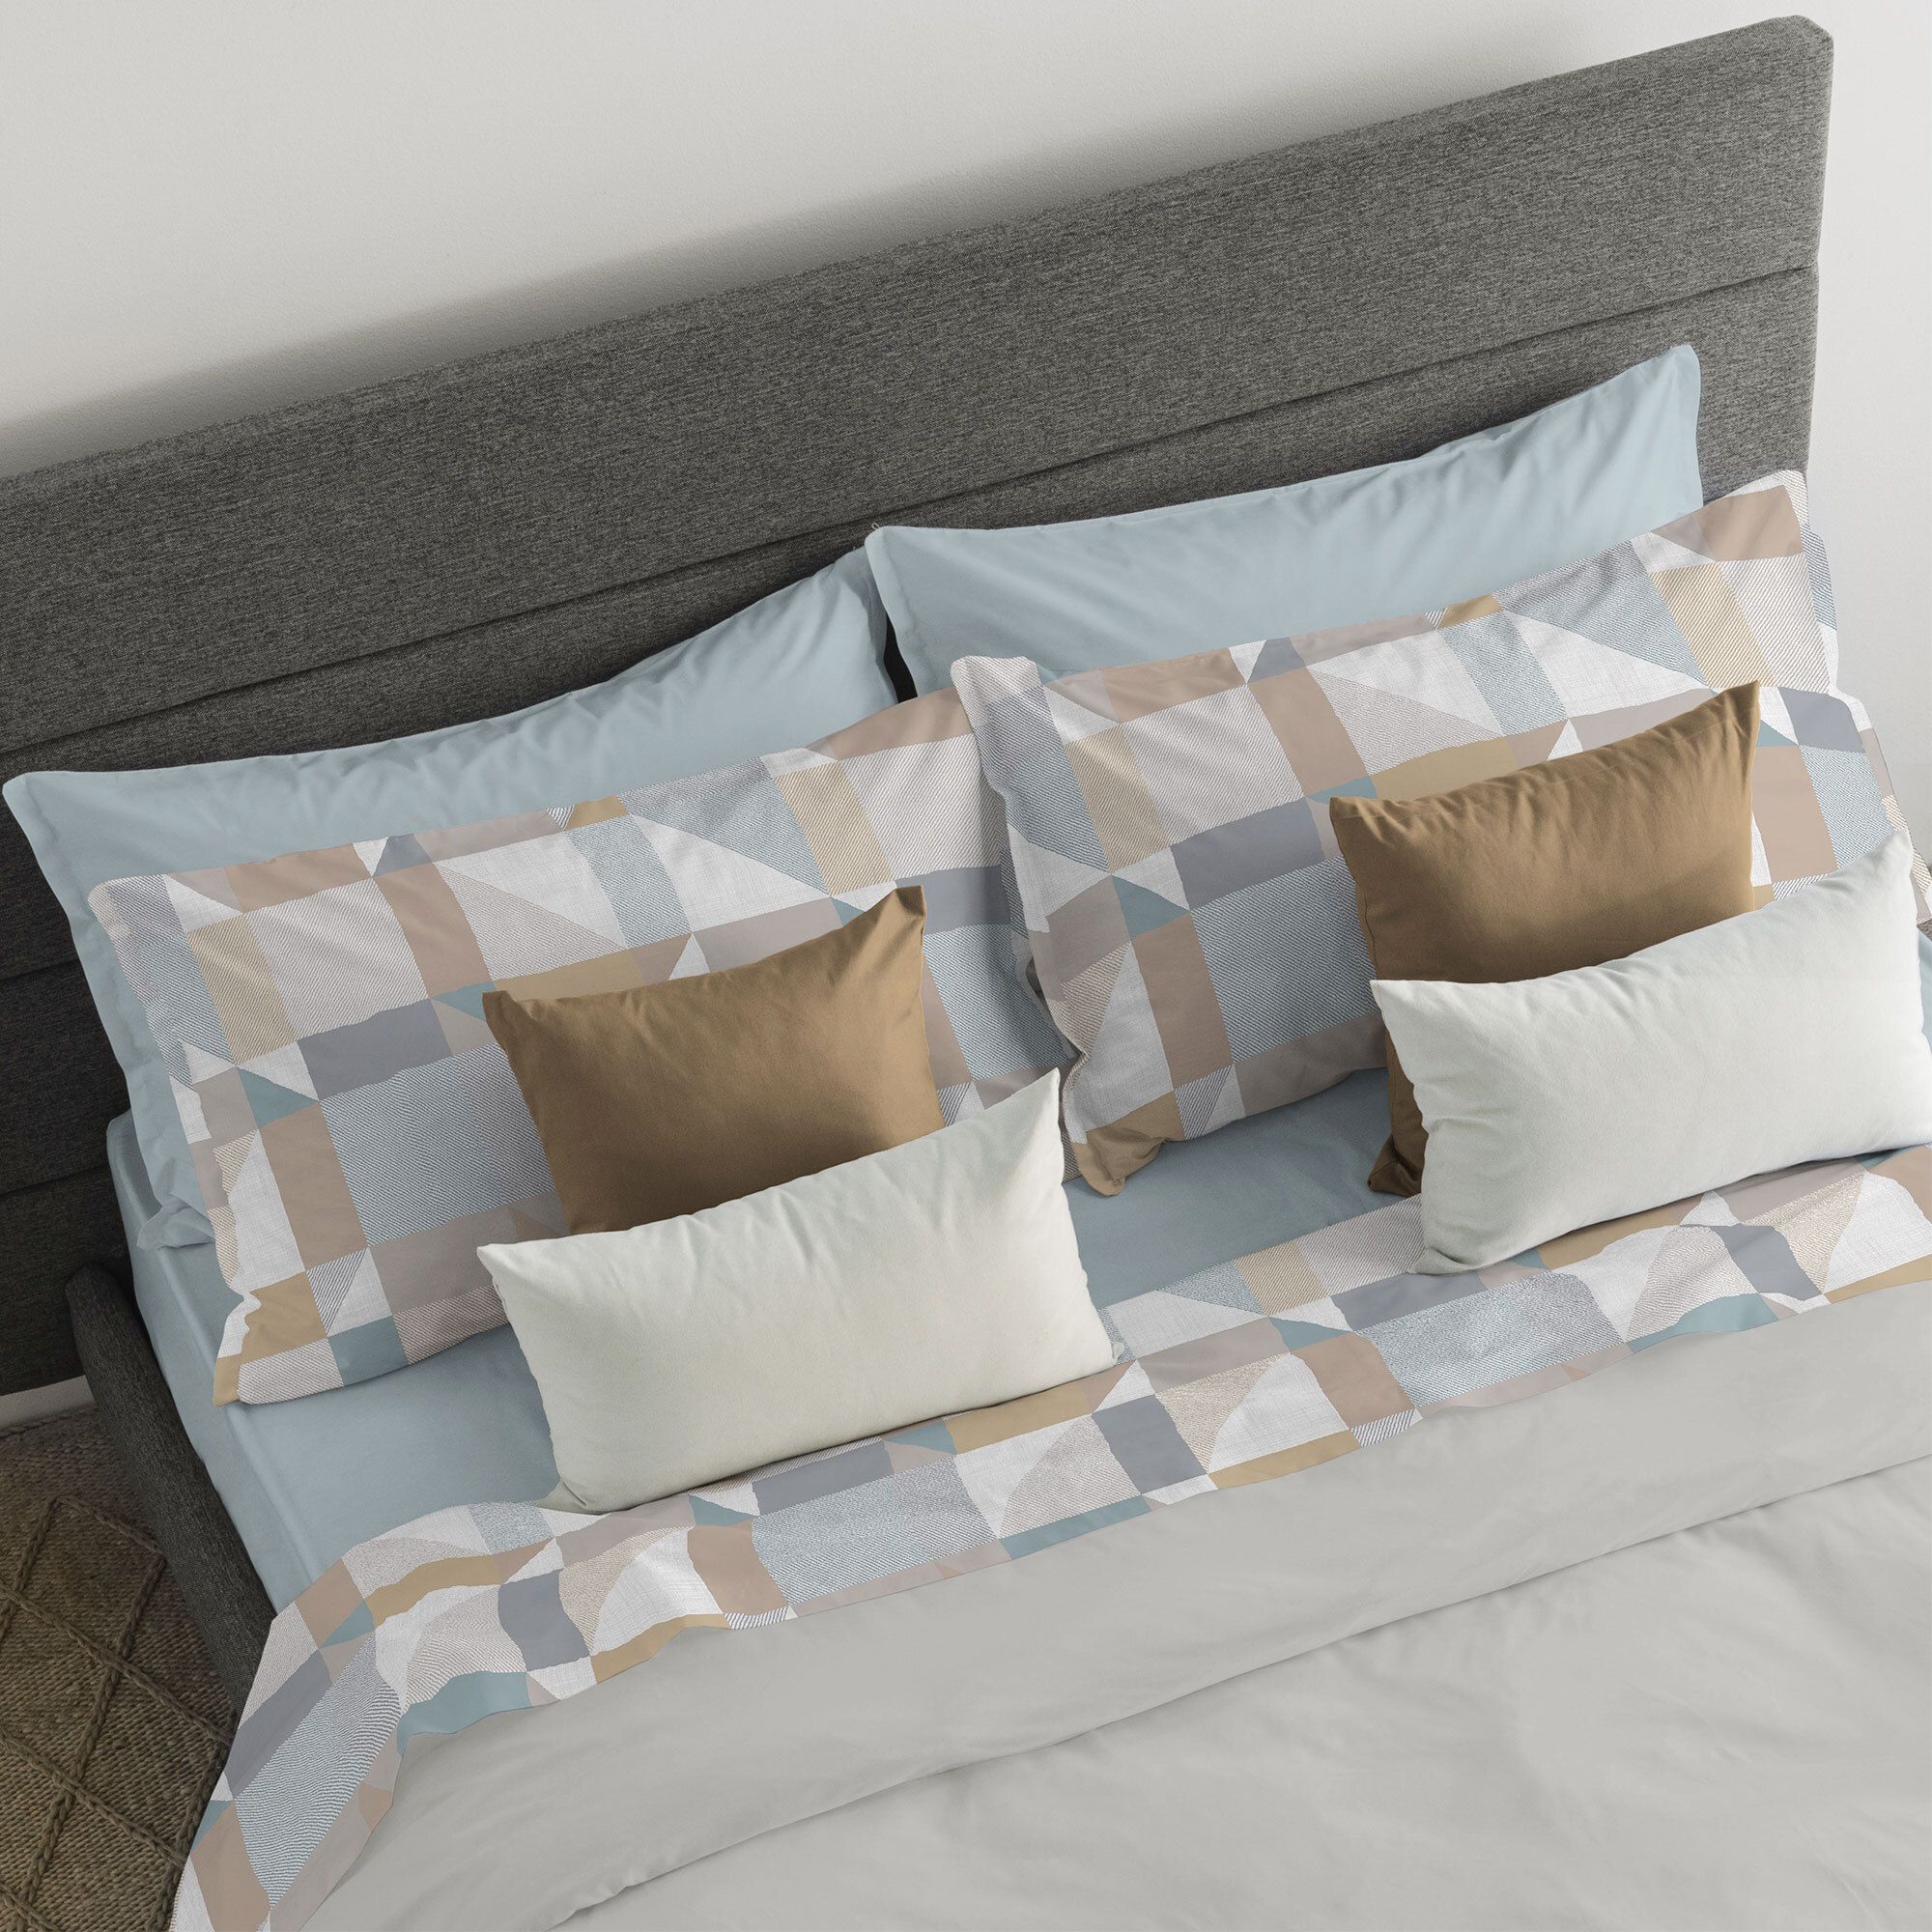 Image of Completo letto in caldo cotone stampato